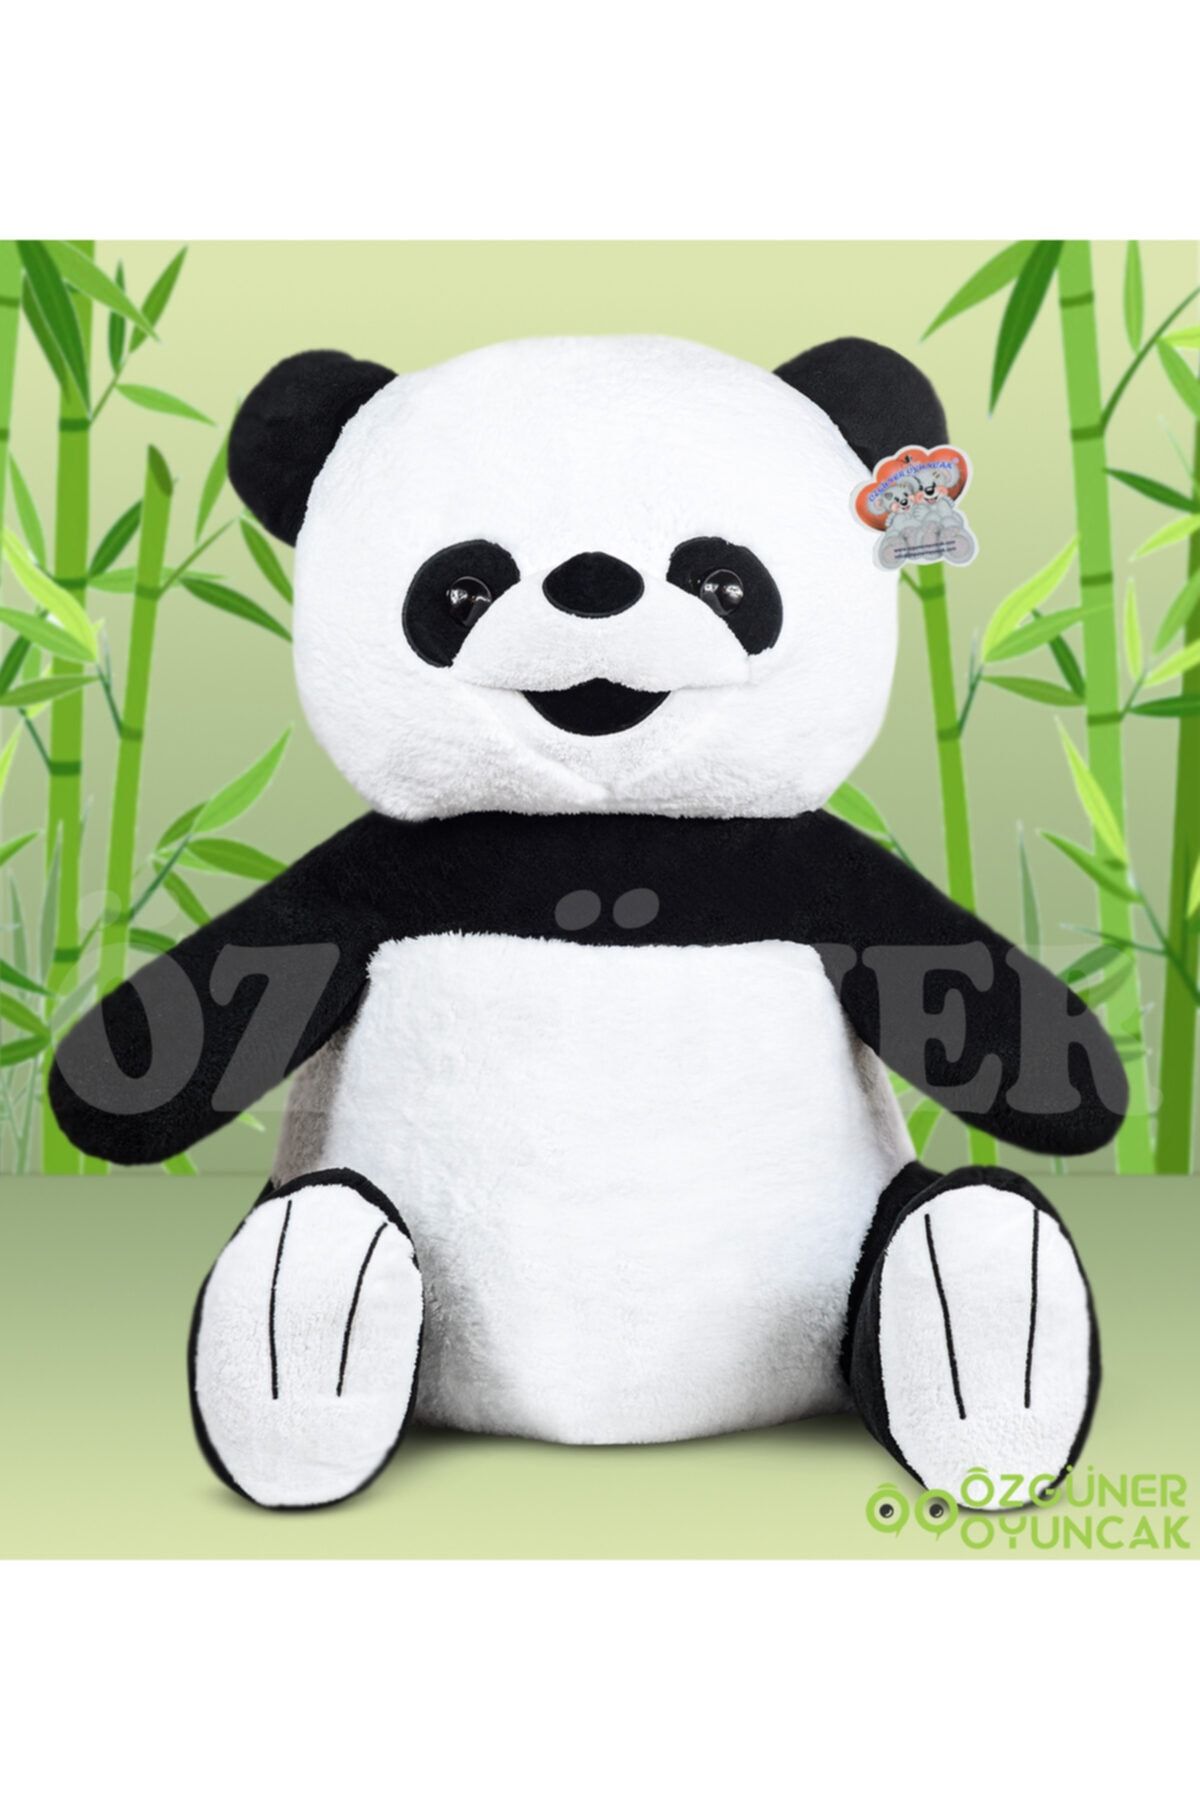 Özgüner Oyuncak Sevimli Panda No 3